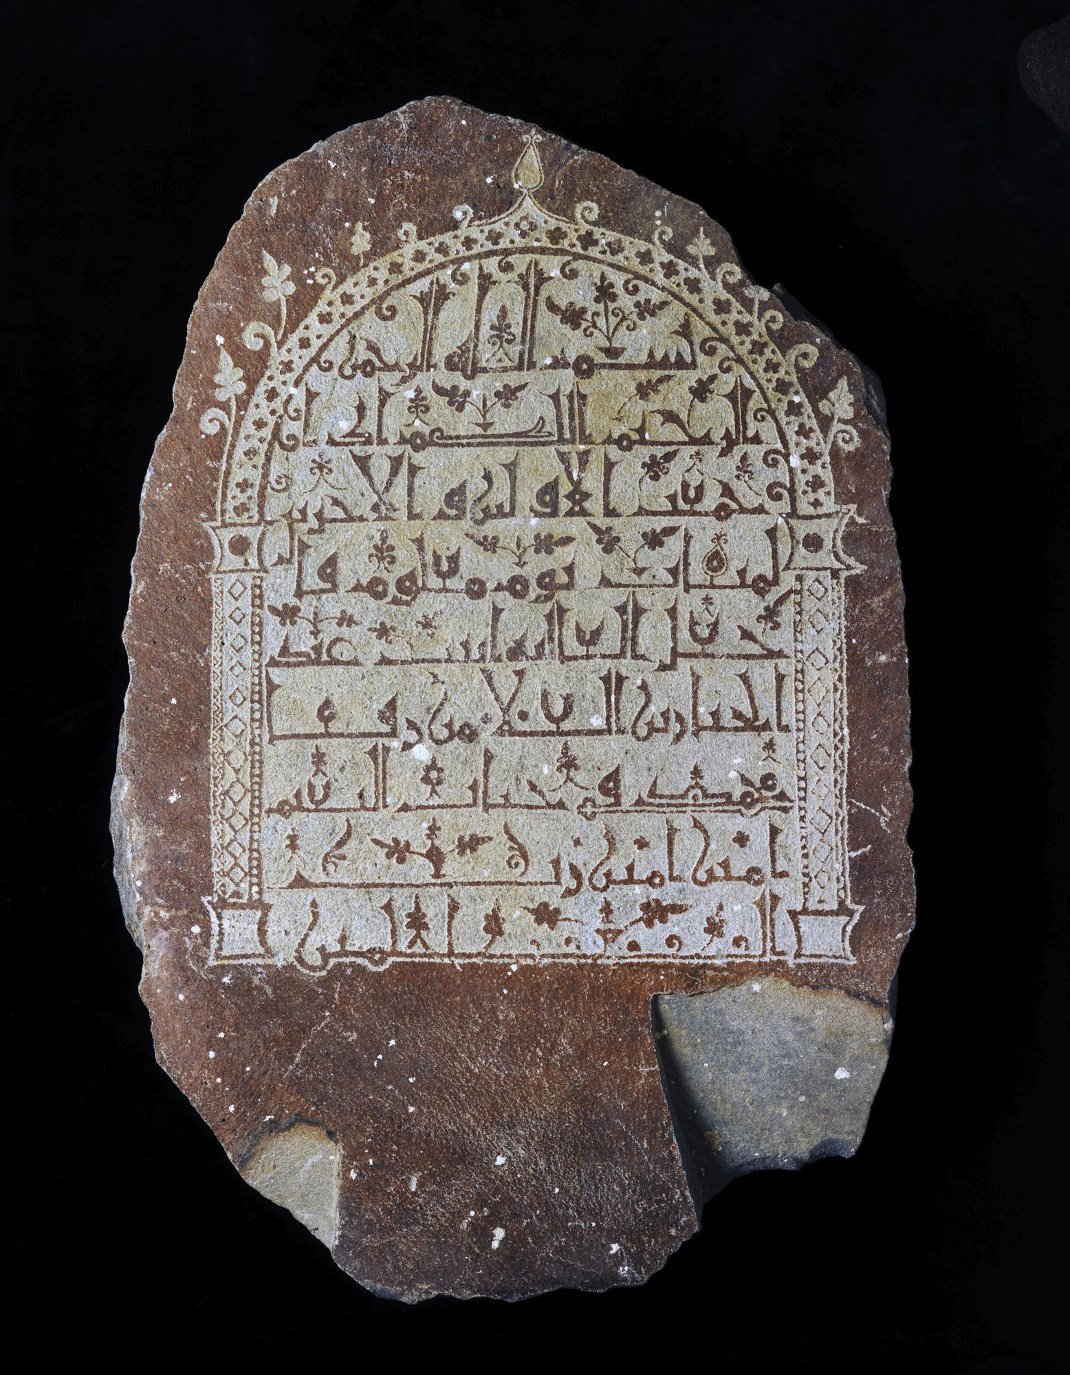 Επιτύμβια στήλη της al-Ghaliya, κόρης του Abd al-Jabbar, γιου του al-Ala Από τη Μέκκα 9ος αιώνας μ.Χ. Βασάλτης Εθνικό Μουσείο, Ριάντ. Για την επιγραφή χρησιμοποιήθηκε αυθεντική κομψή κουφική γραφή. Στα τέλη του 13ου αιώνα, η επιτύμβια στήλη επαναχρησιμοποιήθηκε στον τάφο ενός λογίου. Η πρακτική αυτή, της ανακύκλωσης των ταφικών στηλών φαίνεται πως υπήρξε αρκετά συνήθης.